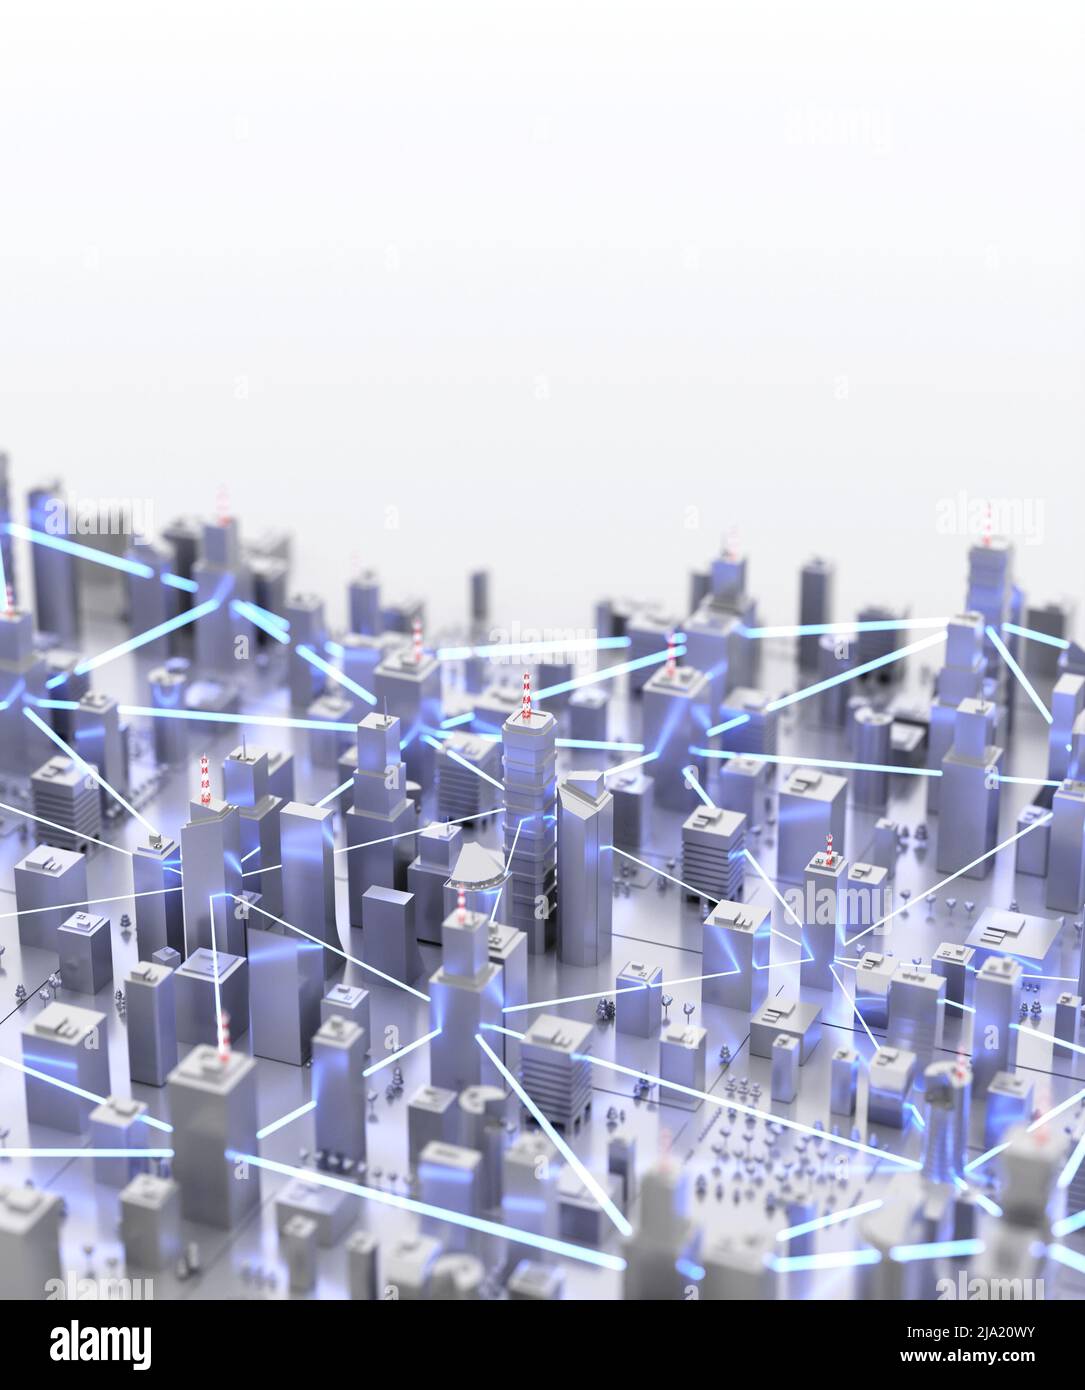 Città moderna e futuristica. Internet, concetto di reti decentralizzate. Sfondo astratto. Rendering digitale 3D. Foto Stock